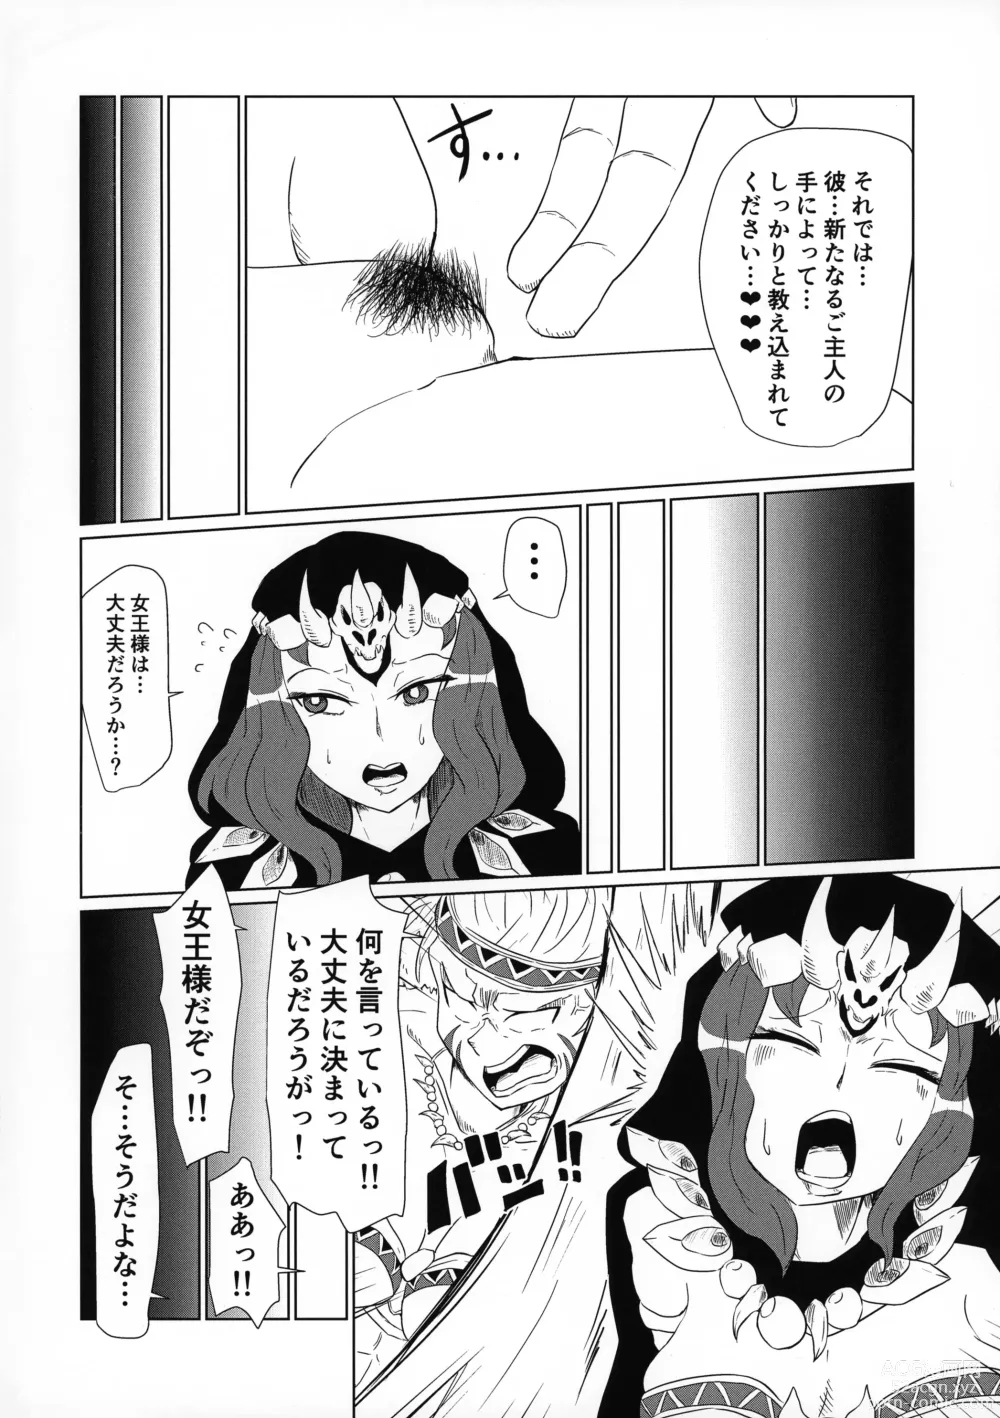 Page 5 of doujinshi Ochita Sato